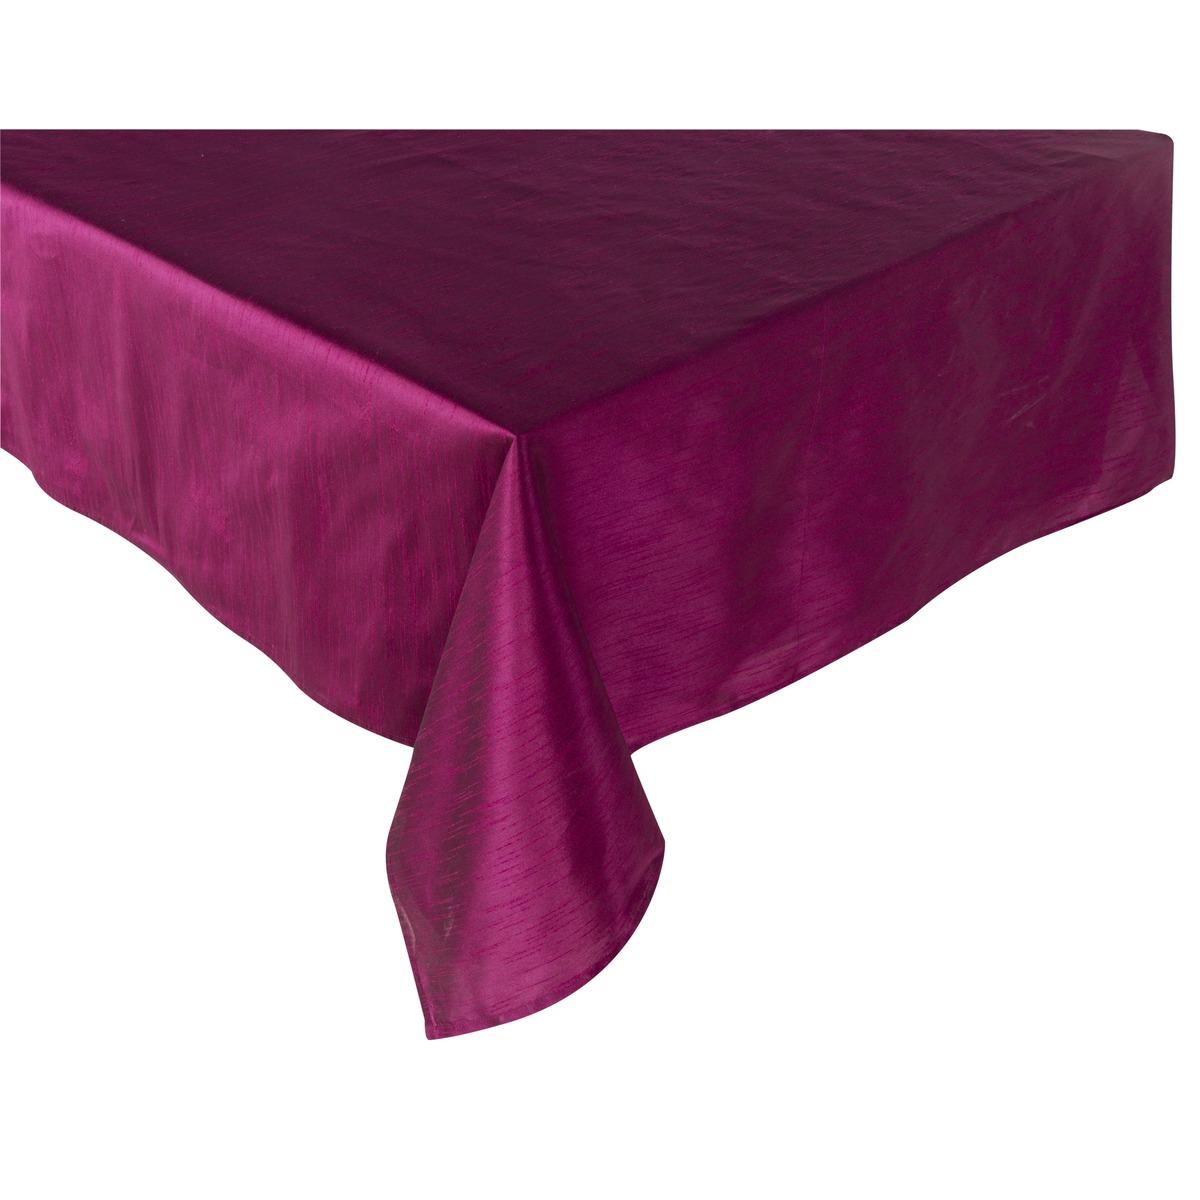 Nappe rectangulaire effet soie - 150 x 250 cm - Violet prune